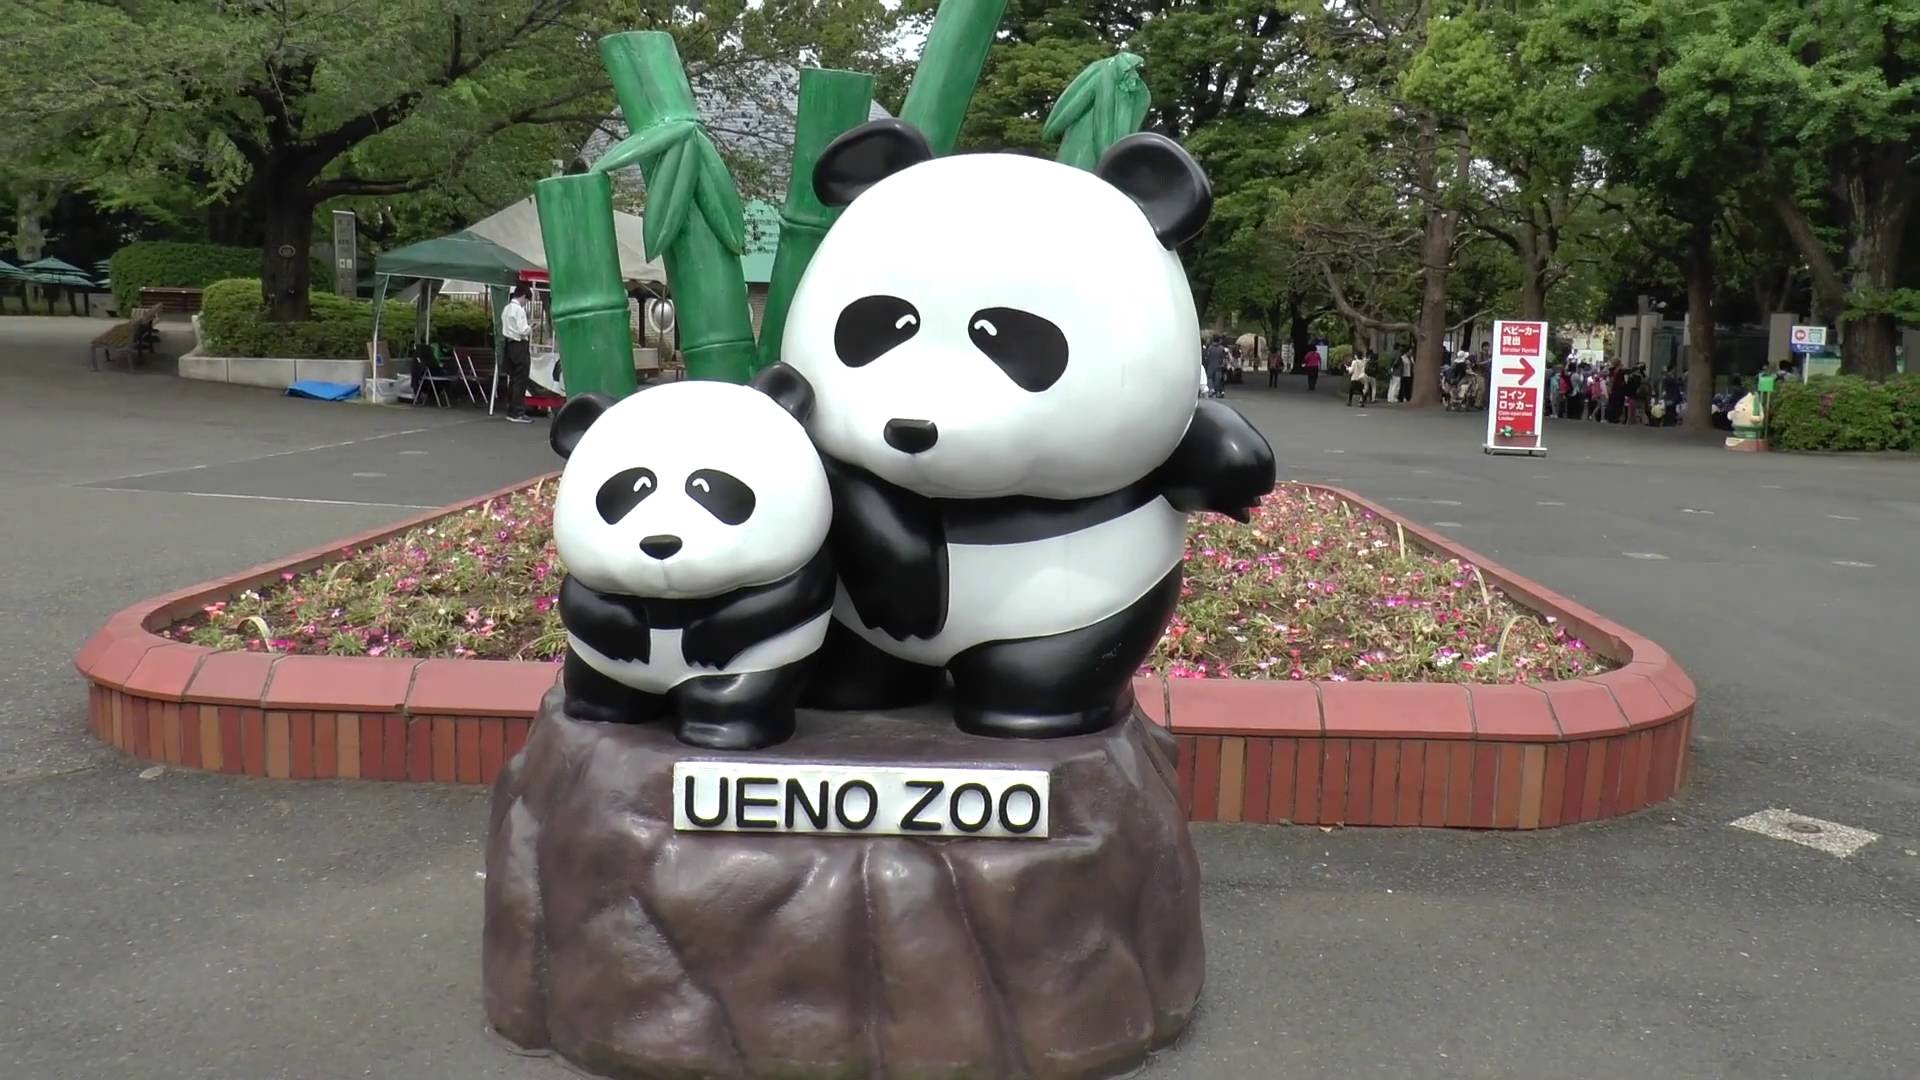 Ueno Zoo, Tokyo